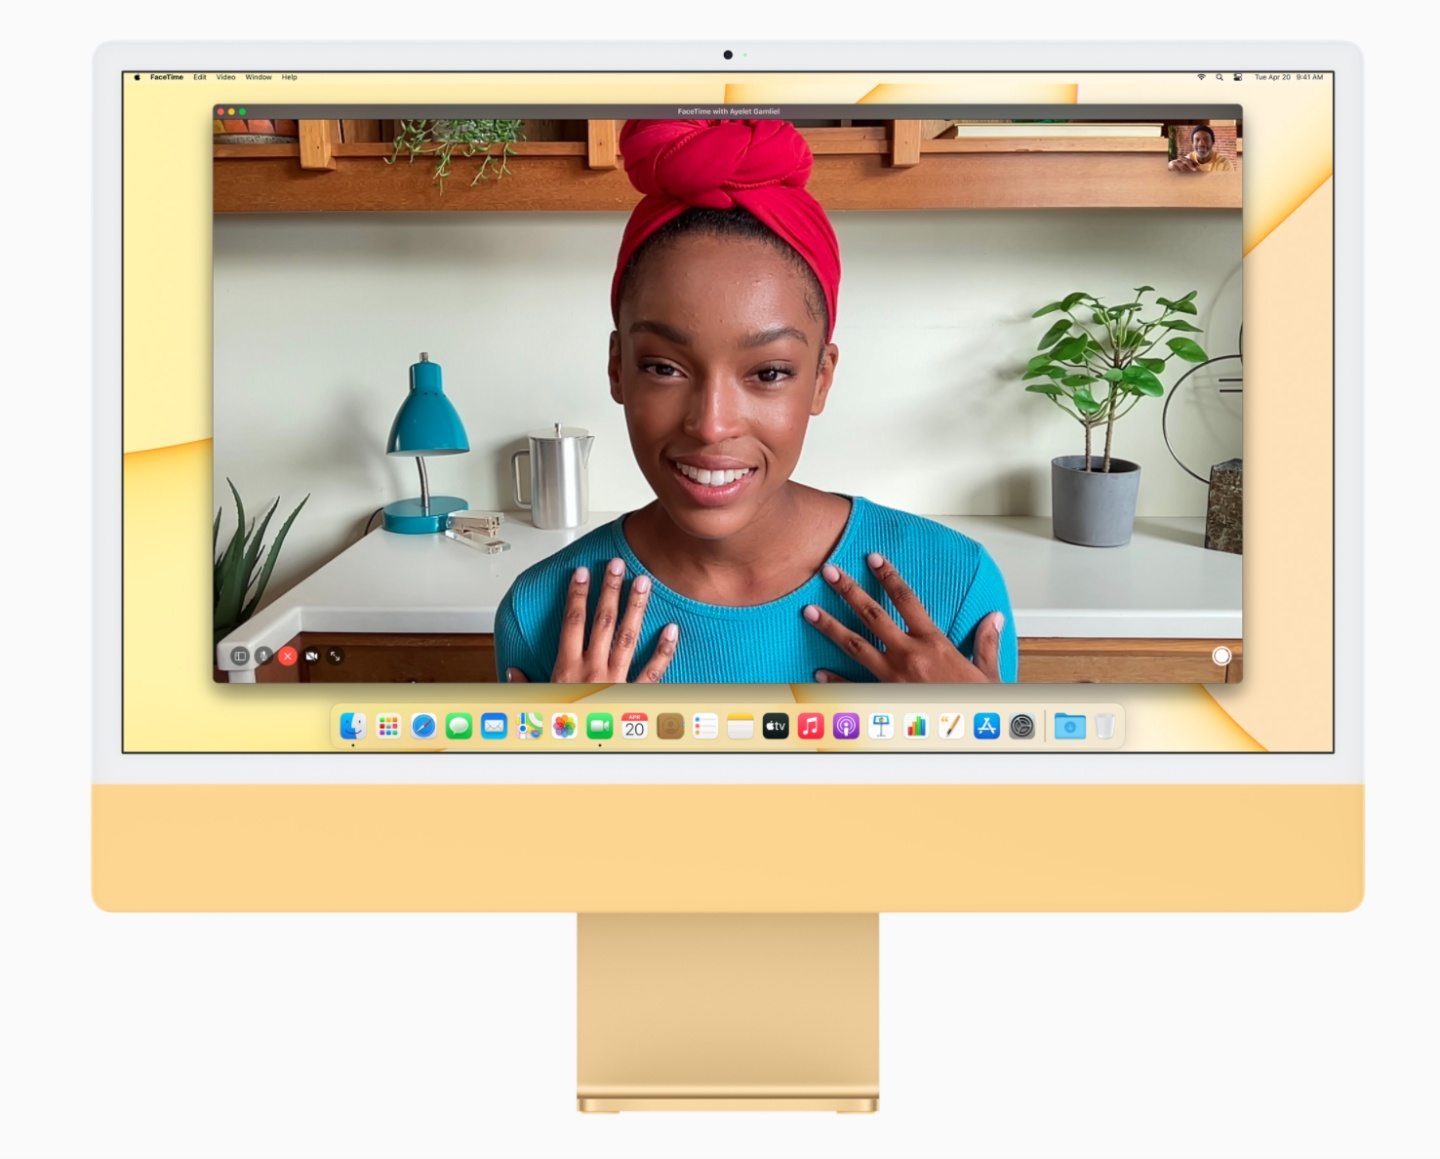 視訊需求提升？即將推出的 14 吋及 16 吋 MacBook Pro 將有可能搭載 1080p 視訊鏡頭且 Mac 全產品線跟進